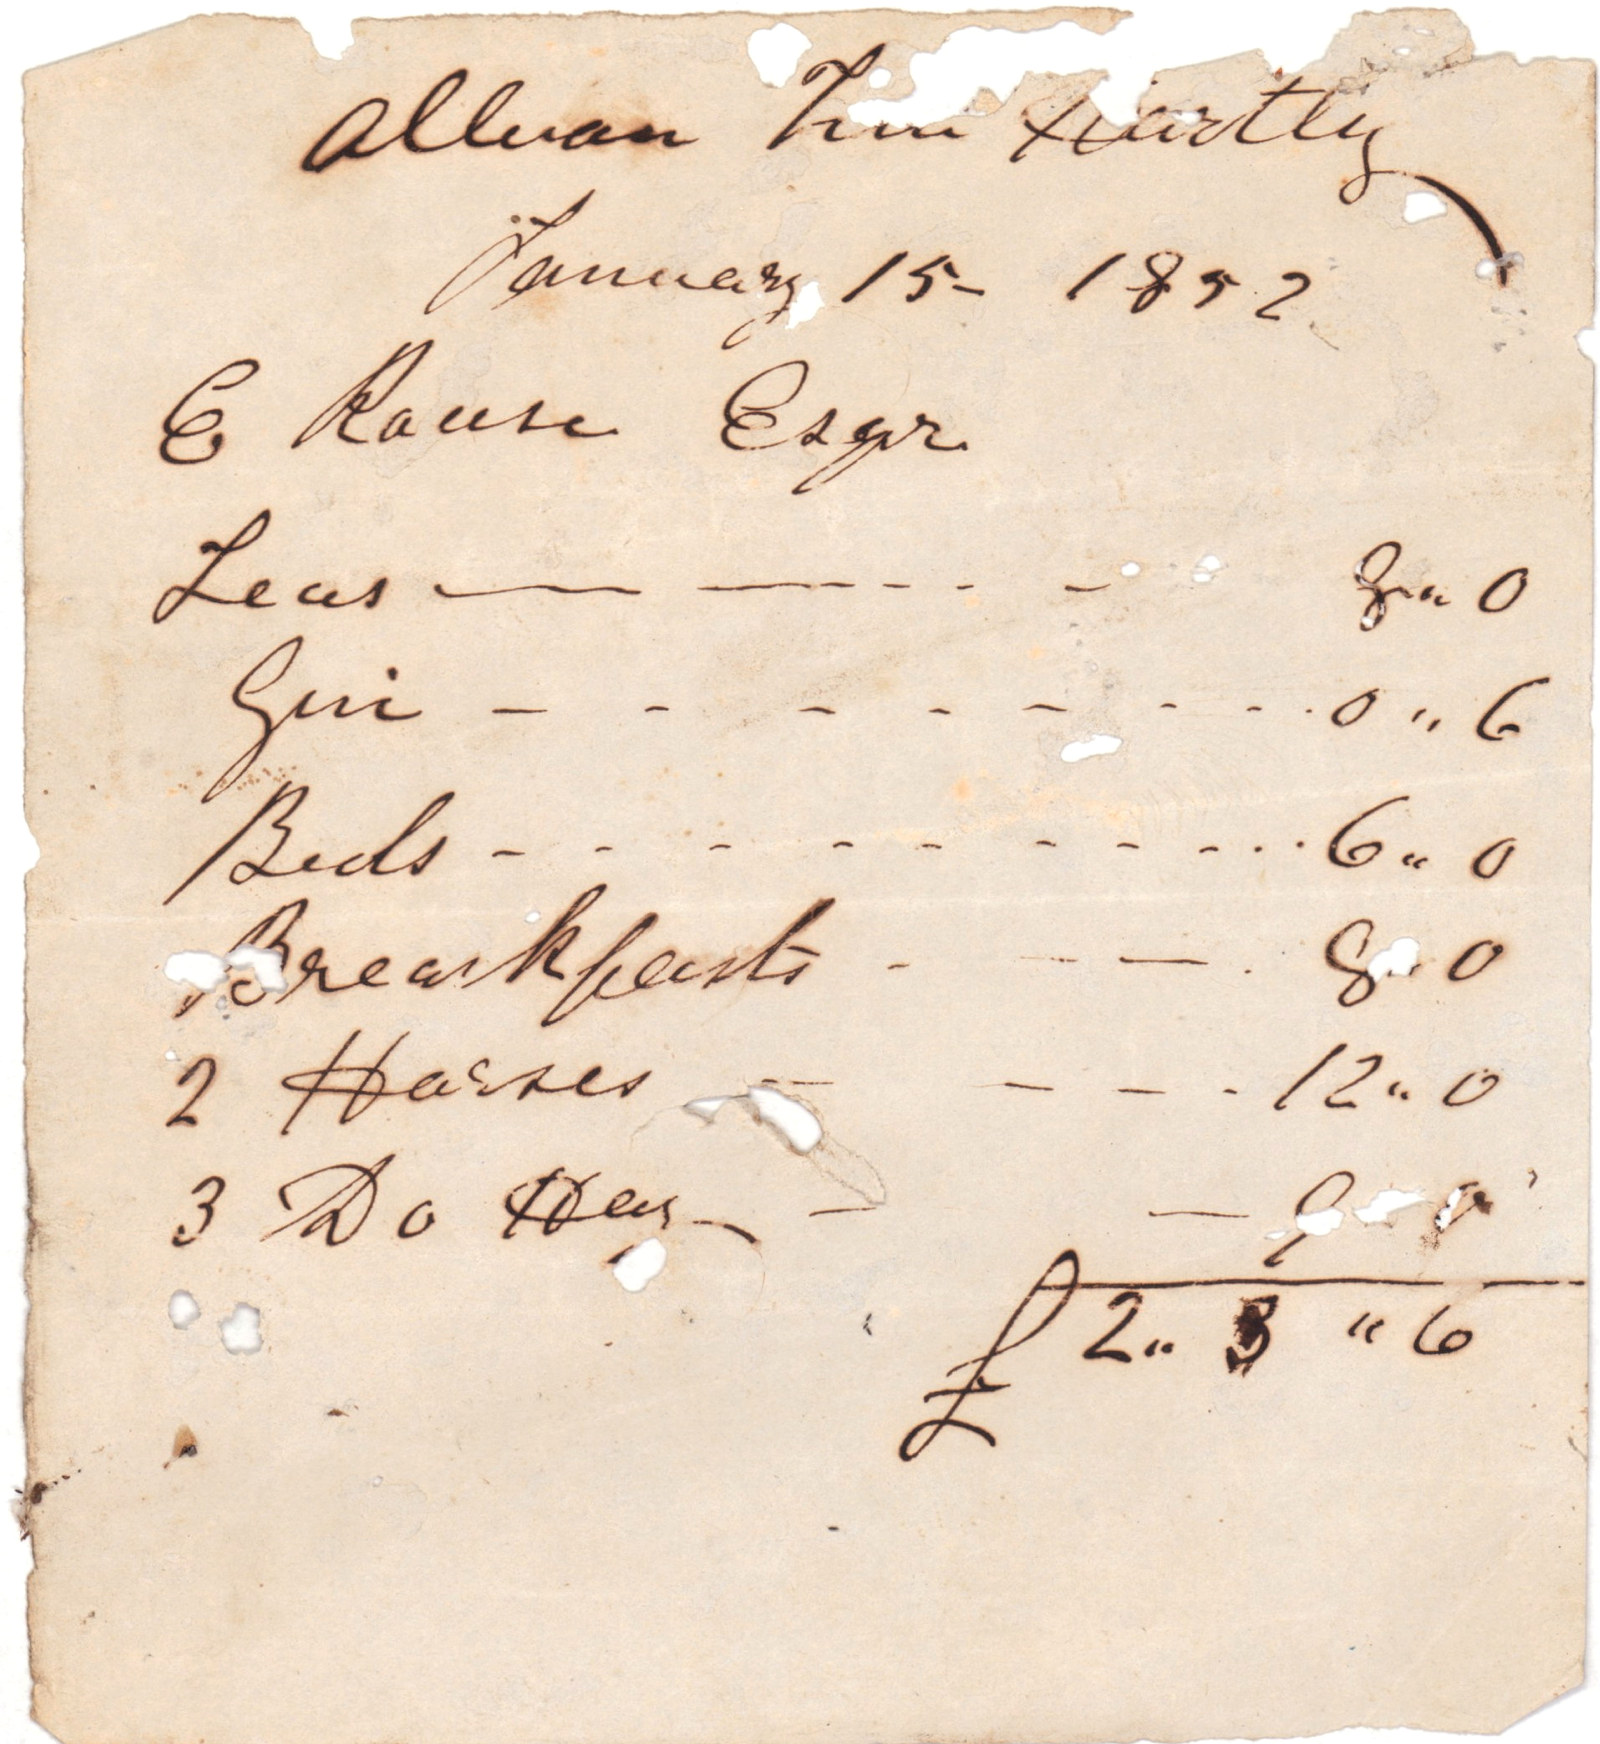 Invoice to E Rouse Esqr, 1852